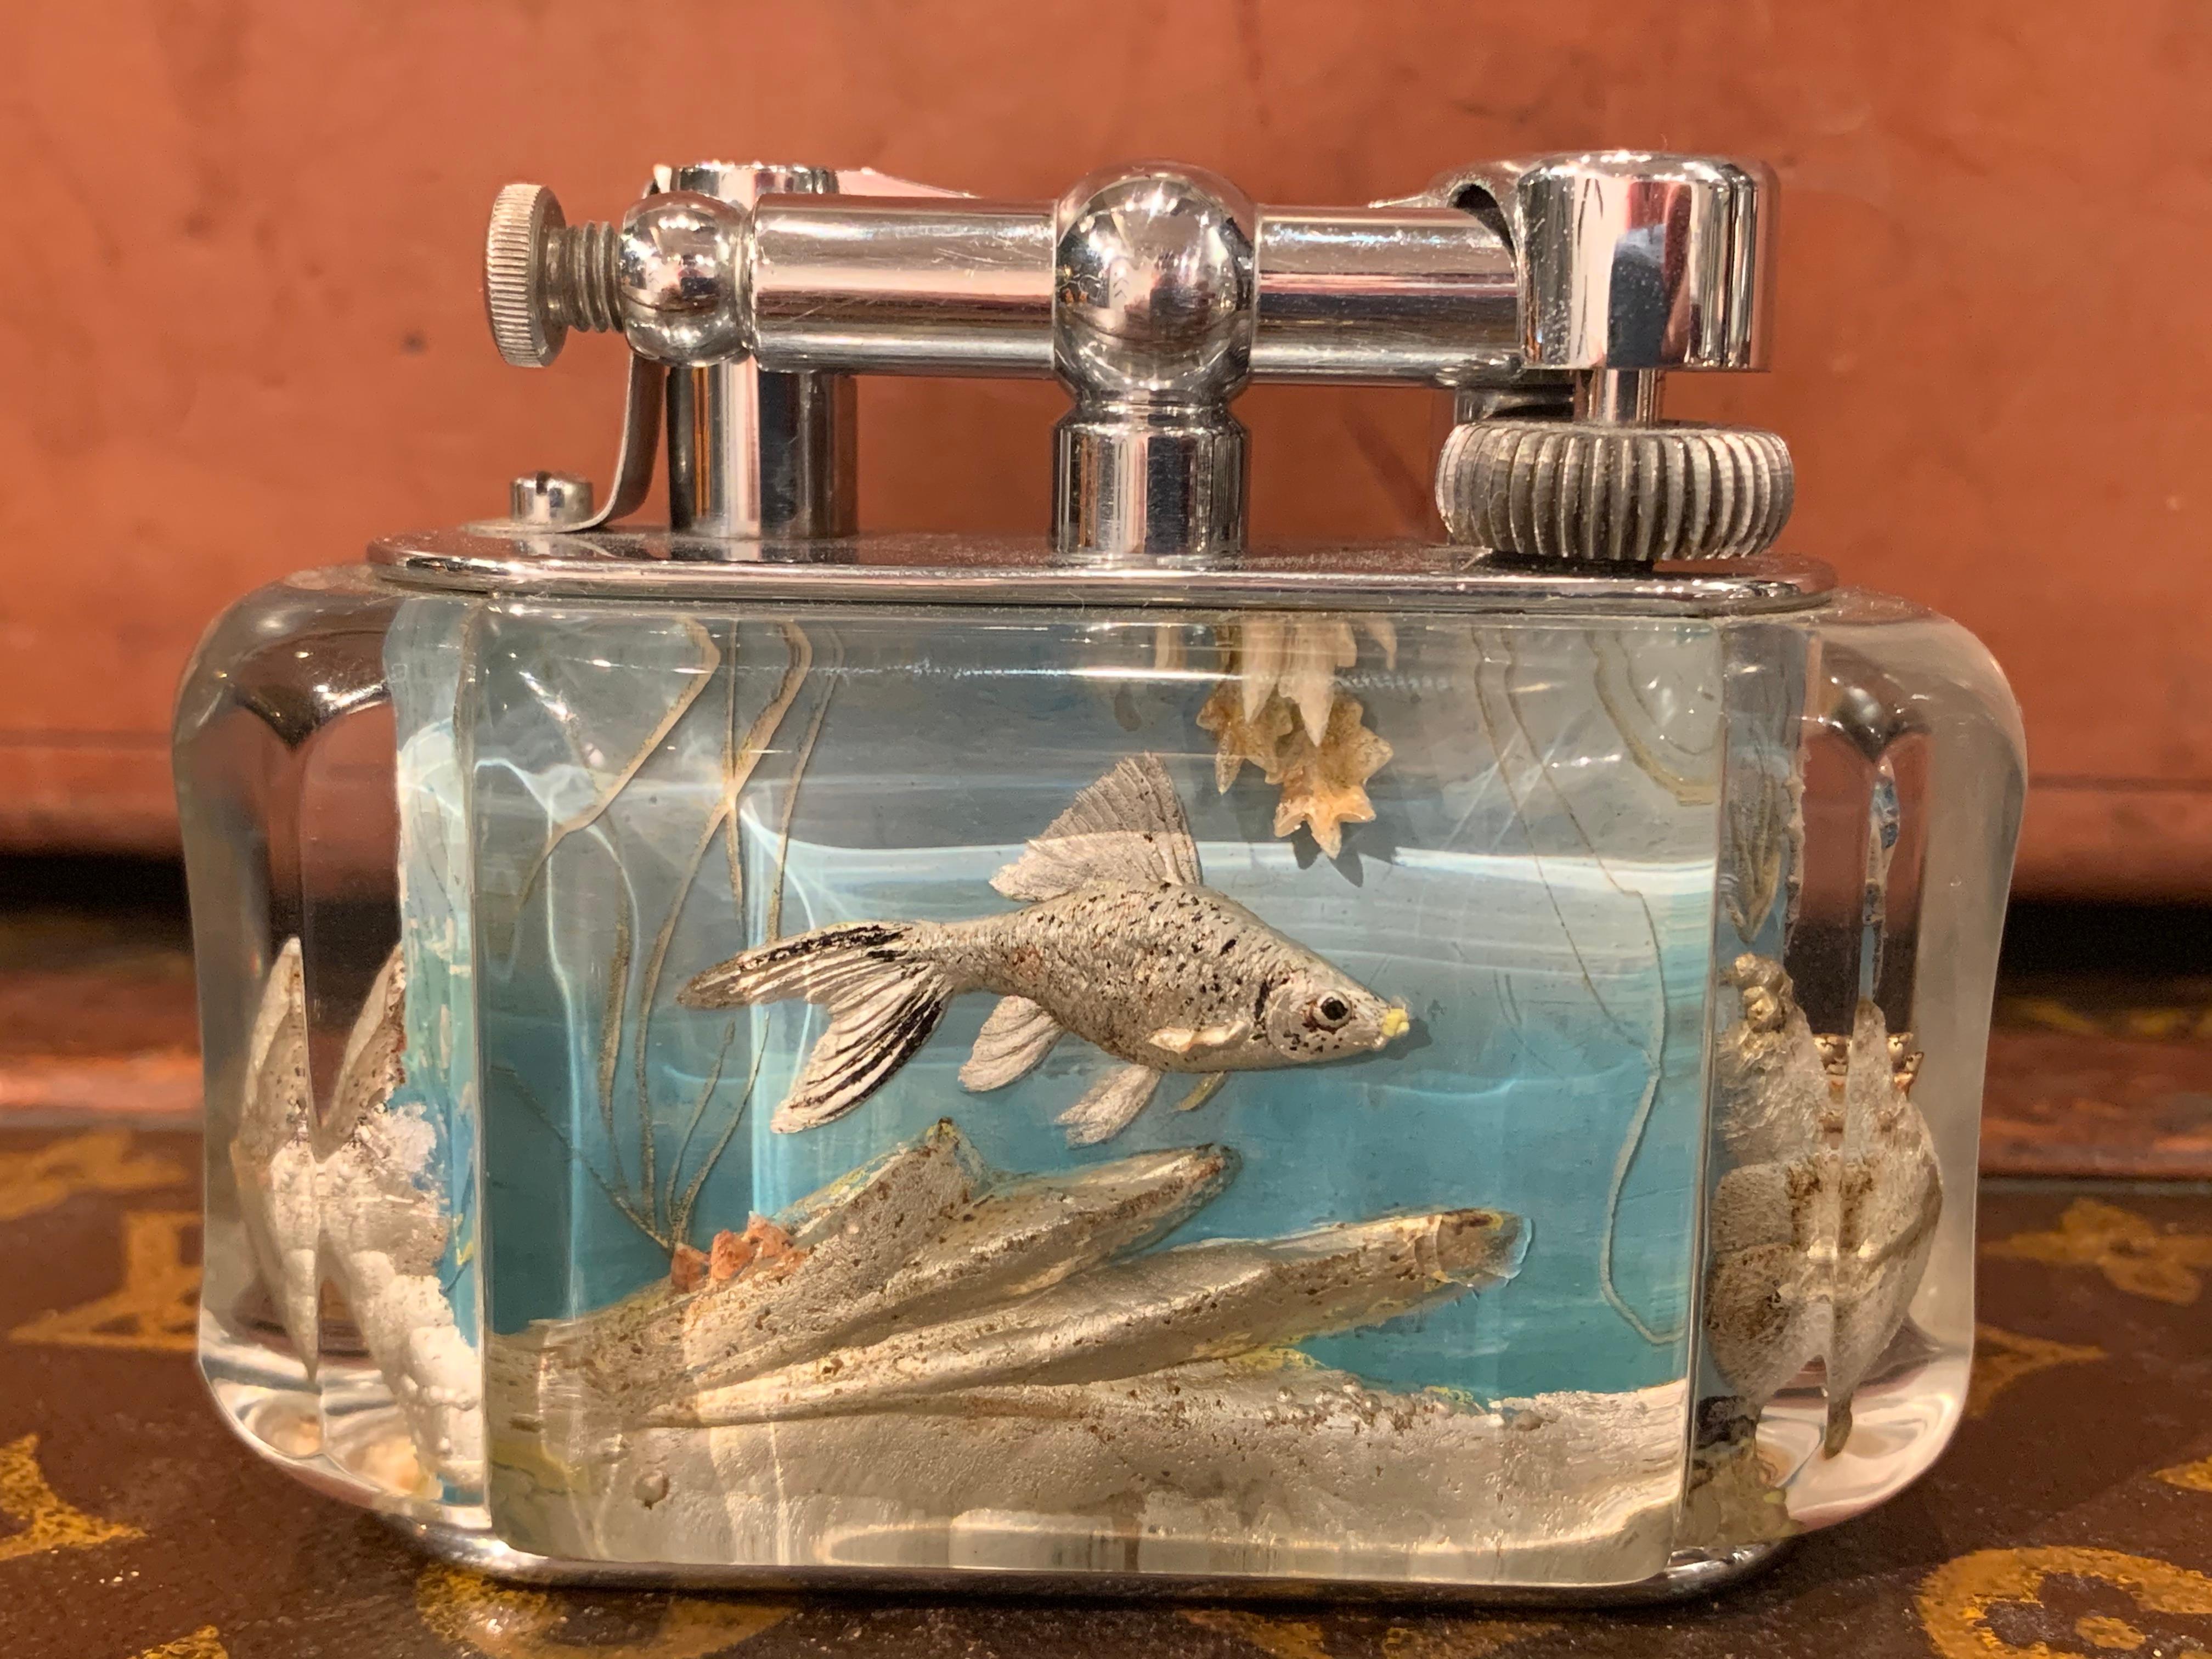 Un rare briquet de table Dunhill Aquarium demi-géant des années 1950 (fabriqué en Angleterre) avec un travail en métal argenté 
Chacun de ces briquets est très rare et unique car ils ont été sculptés et peints à la main et aucun ne se